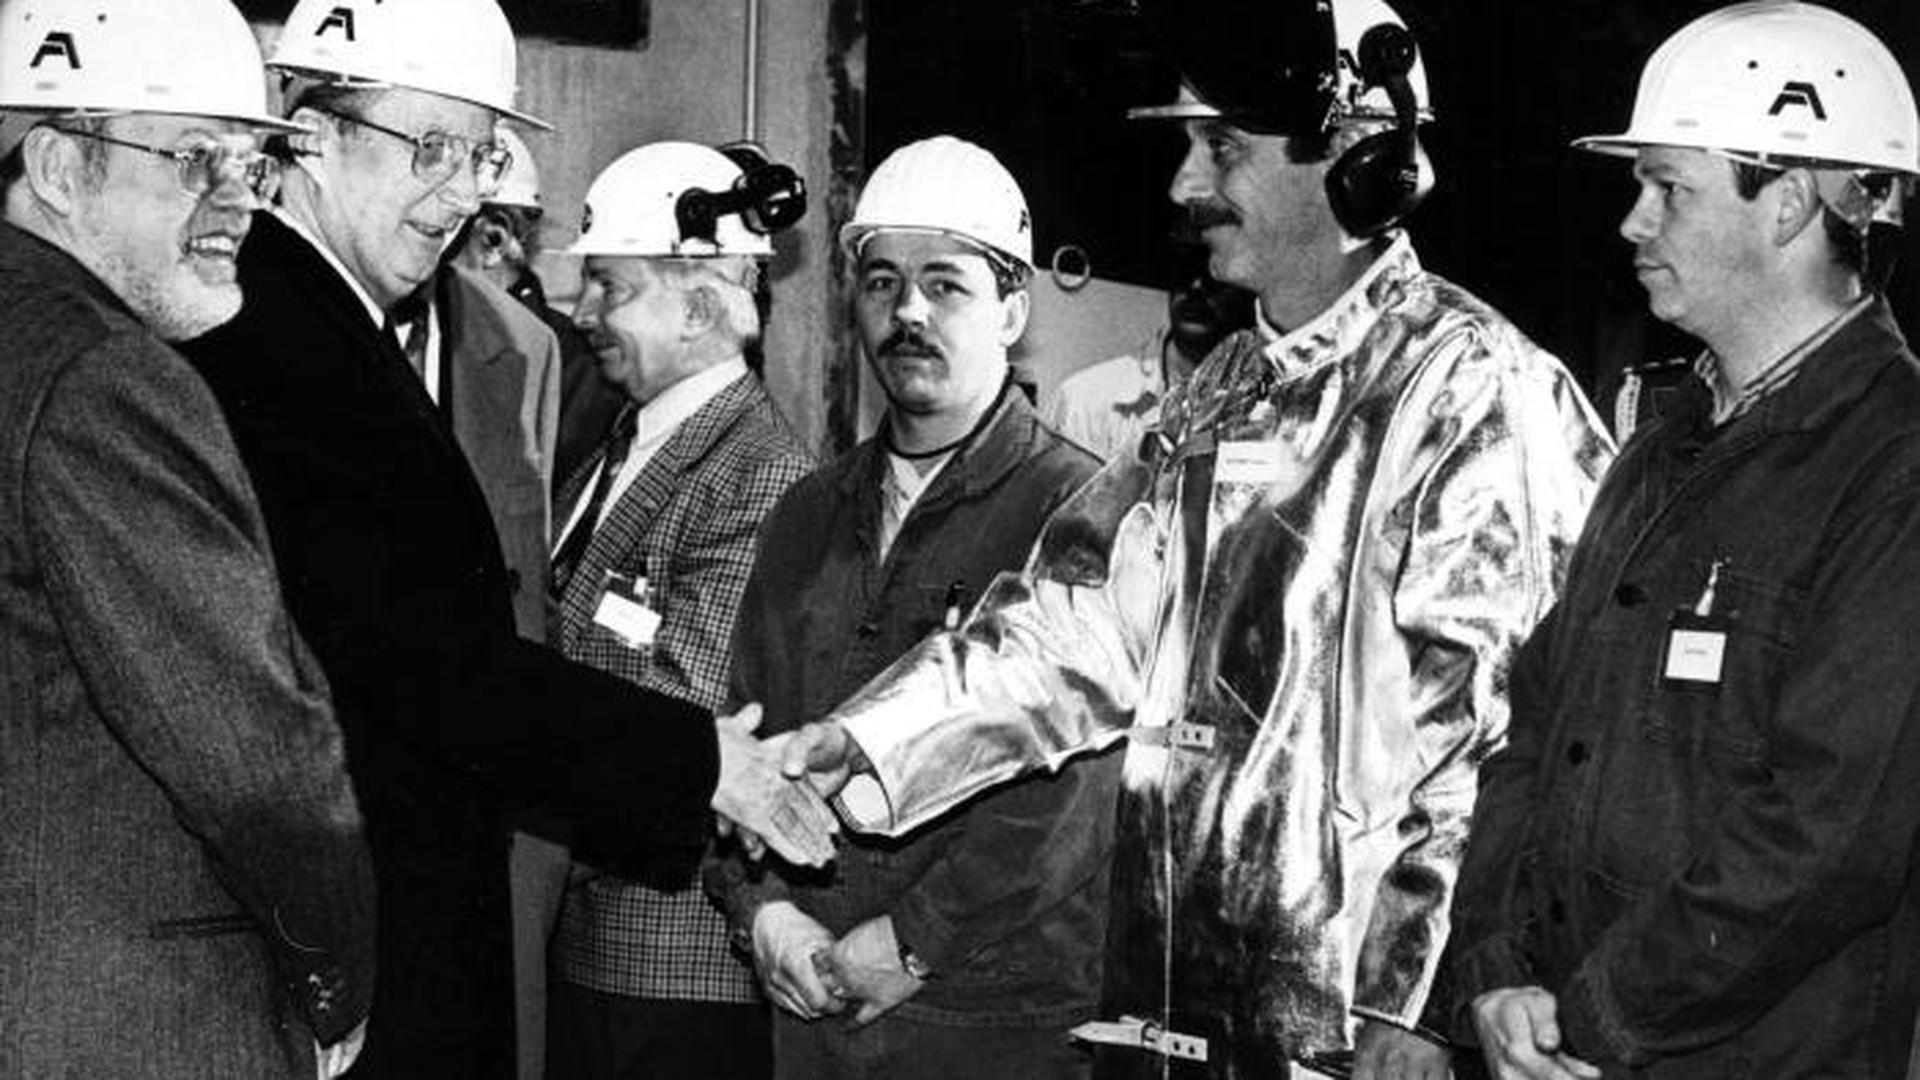 O Rei Alberto II saúda os responsáveis pelo processo de produção de uma siderurgia eléctrica na cabine de comando